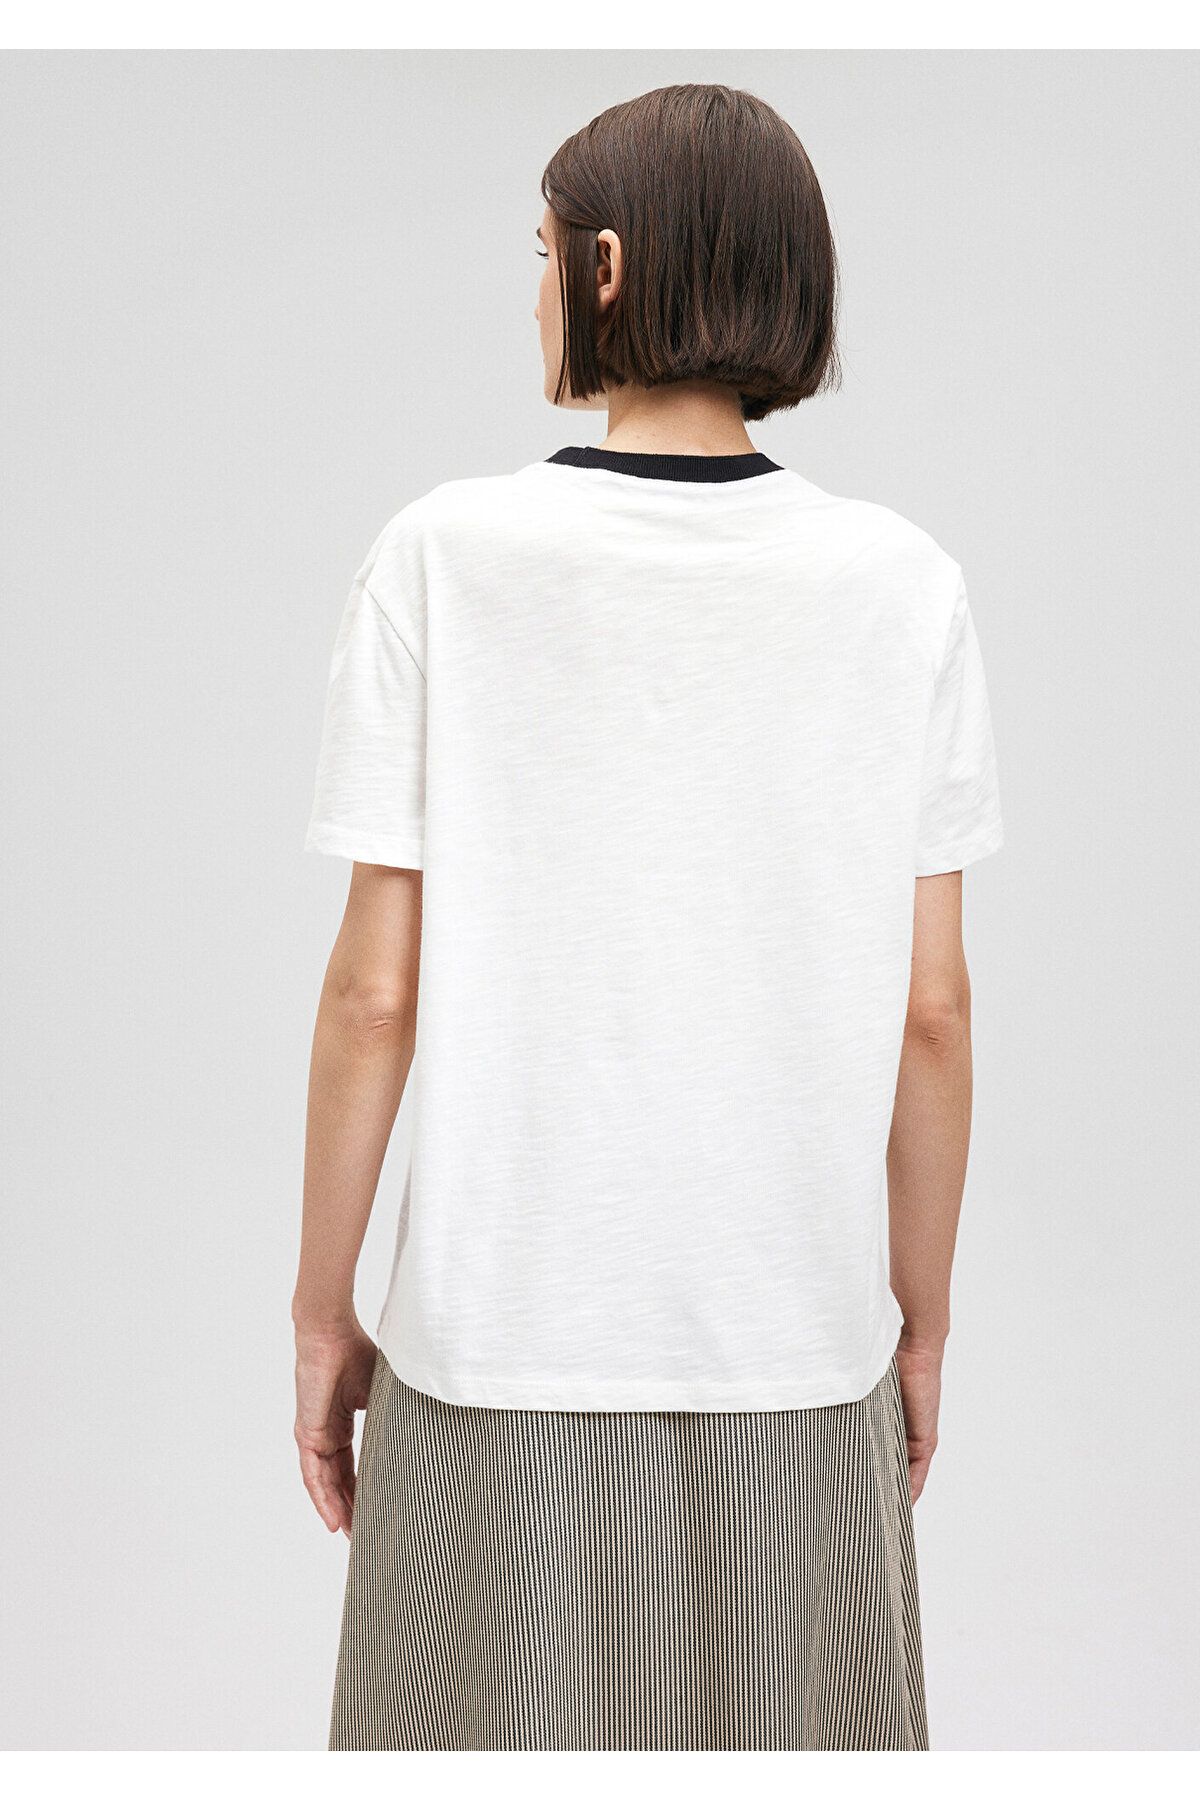 Mavi تی شرت سفید چاپ شده مناسب / برش معمولی 1612138-70057